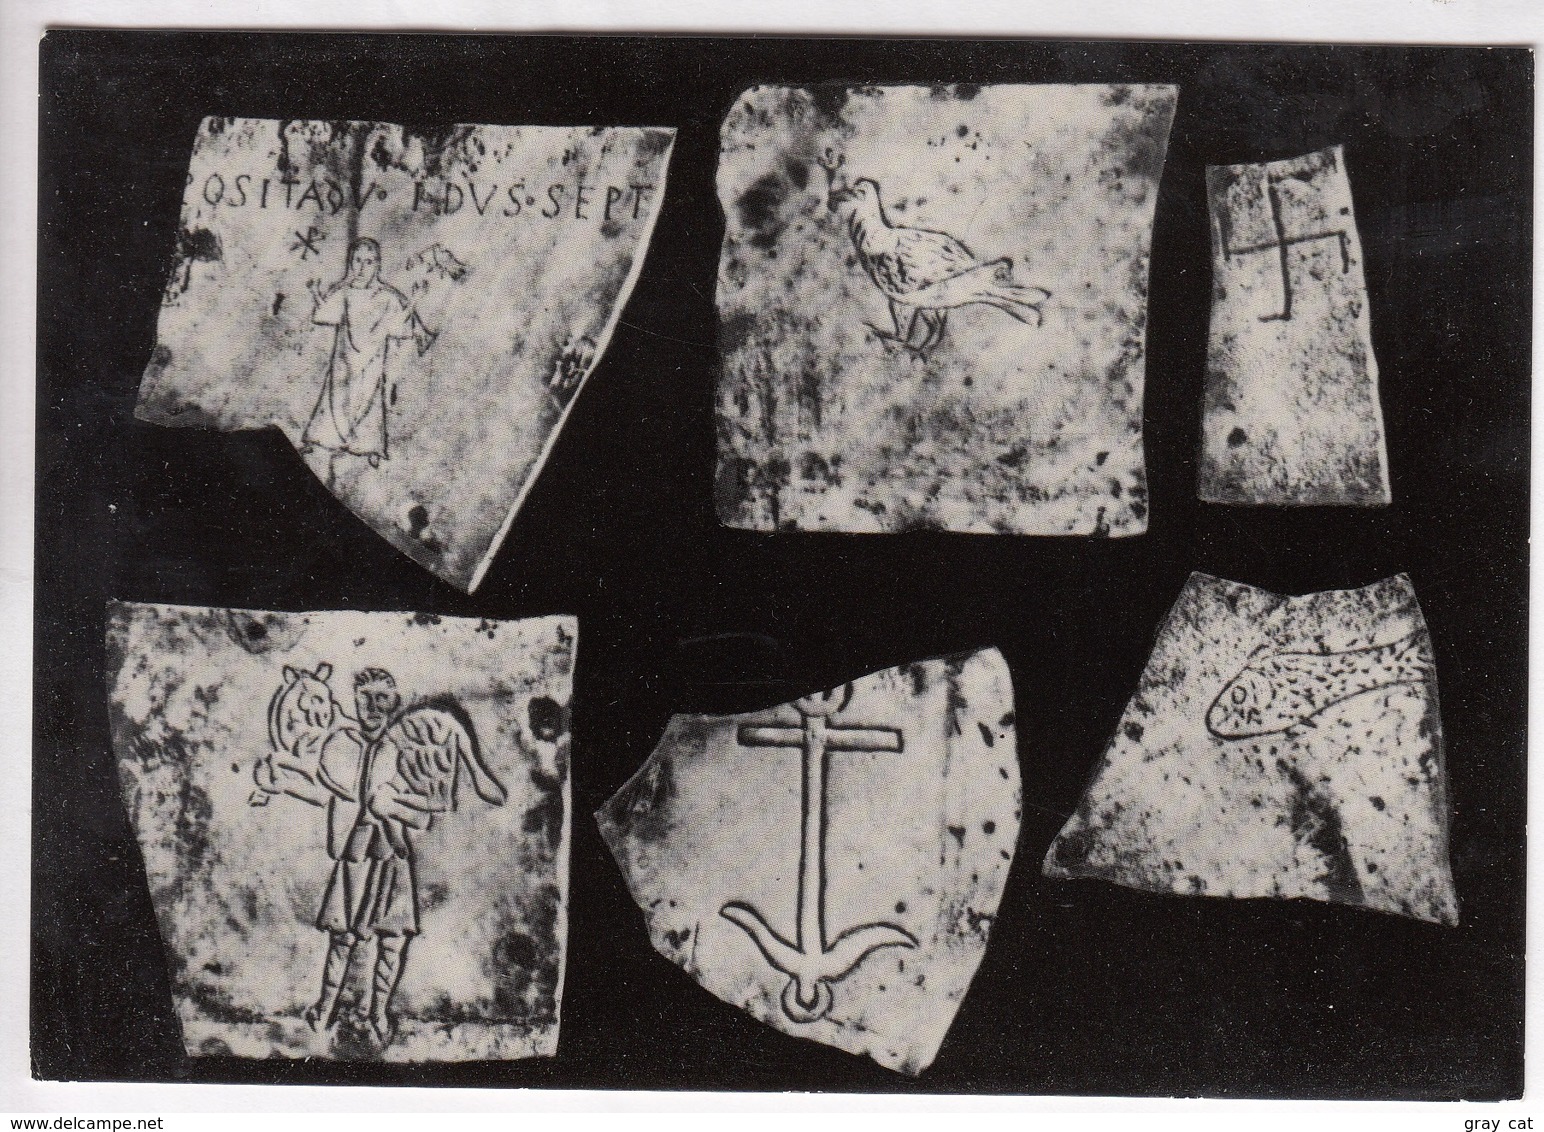 Catacombe Di S. Callisto Simboli, St. Callistus Catacombs Symbols, Unused Real Photo Postcard [22745] - Mostre, Esposizioni